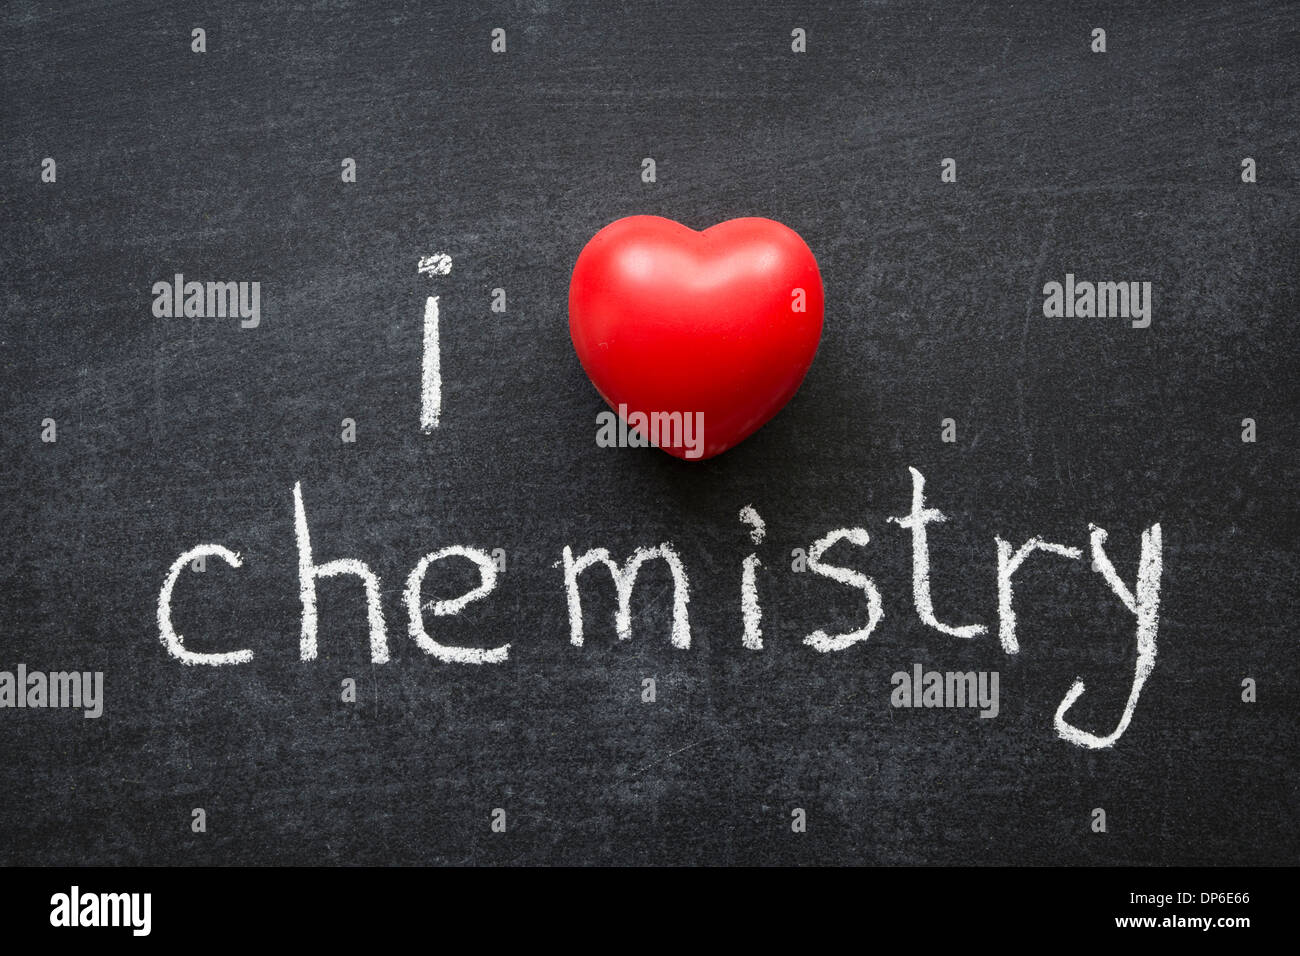 J'adore la phrase de chimie à la main sur le tableau noir de l'école Banque D'Images